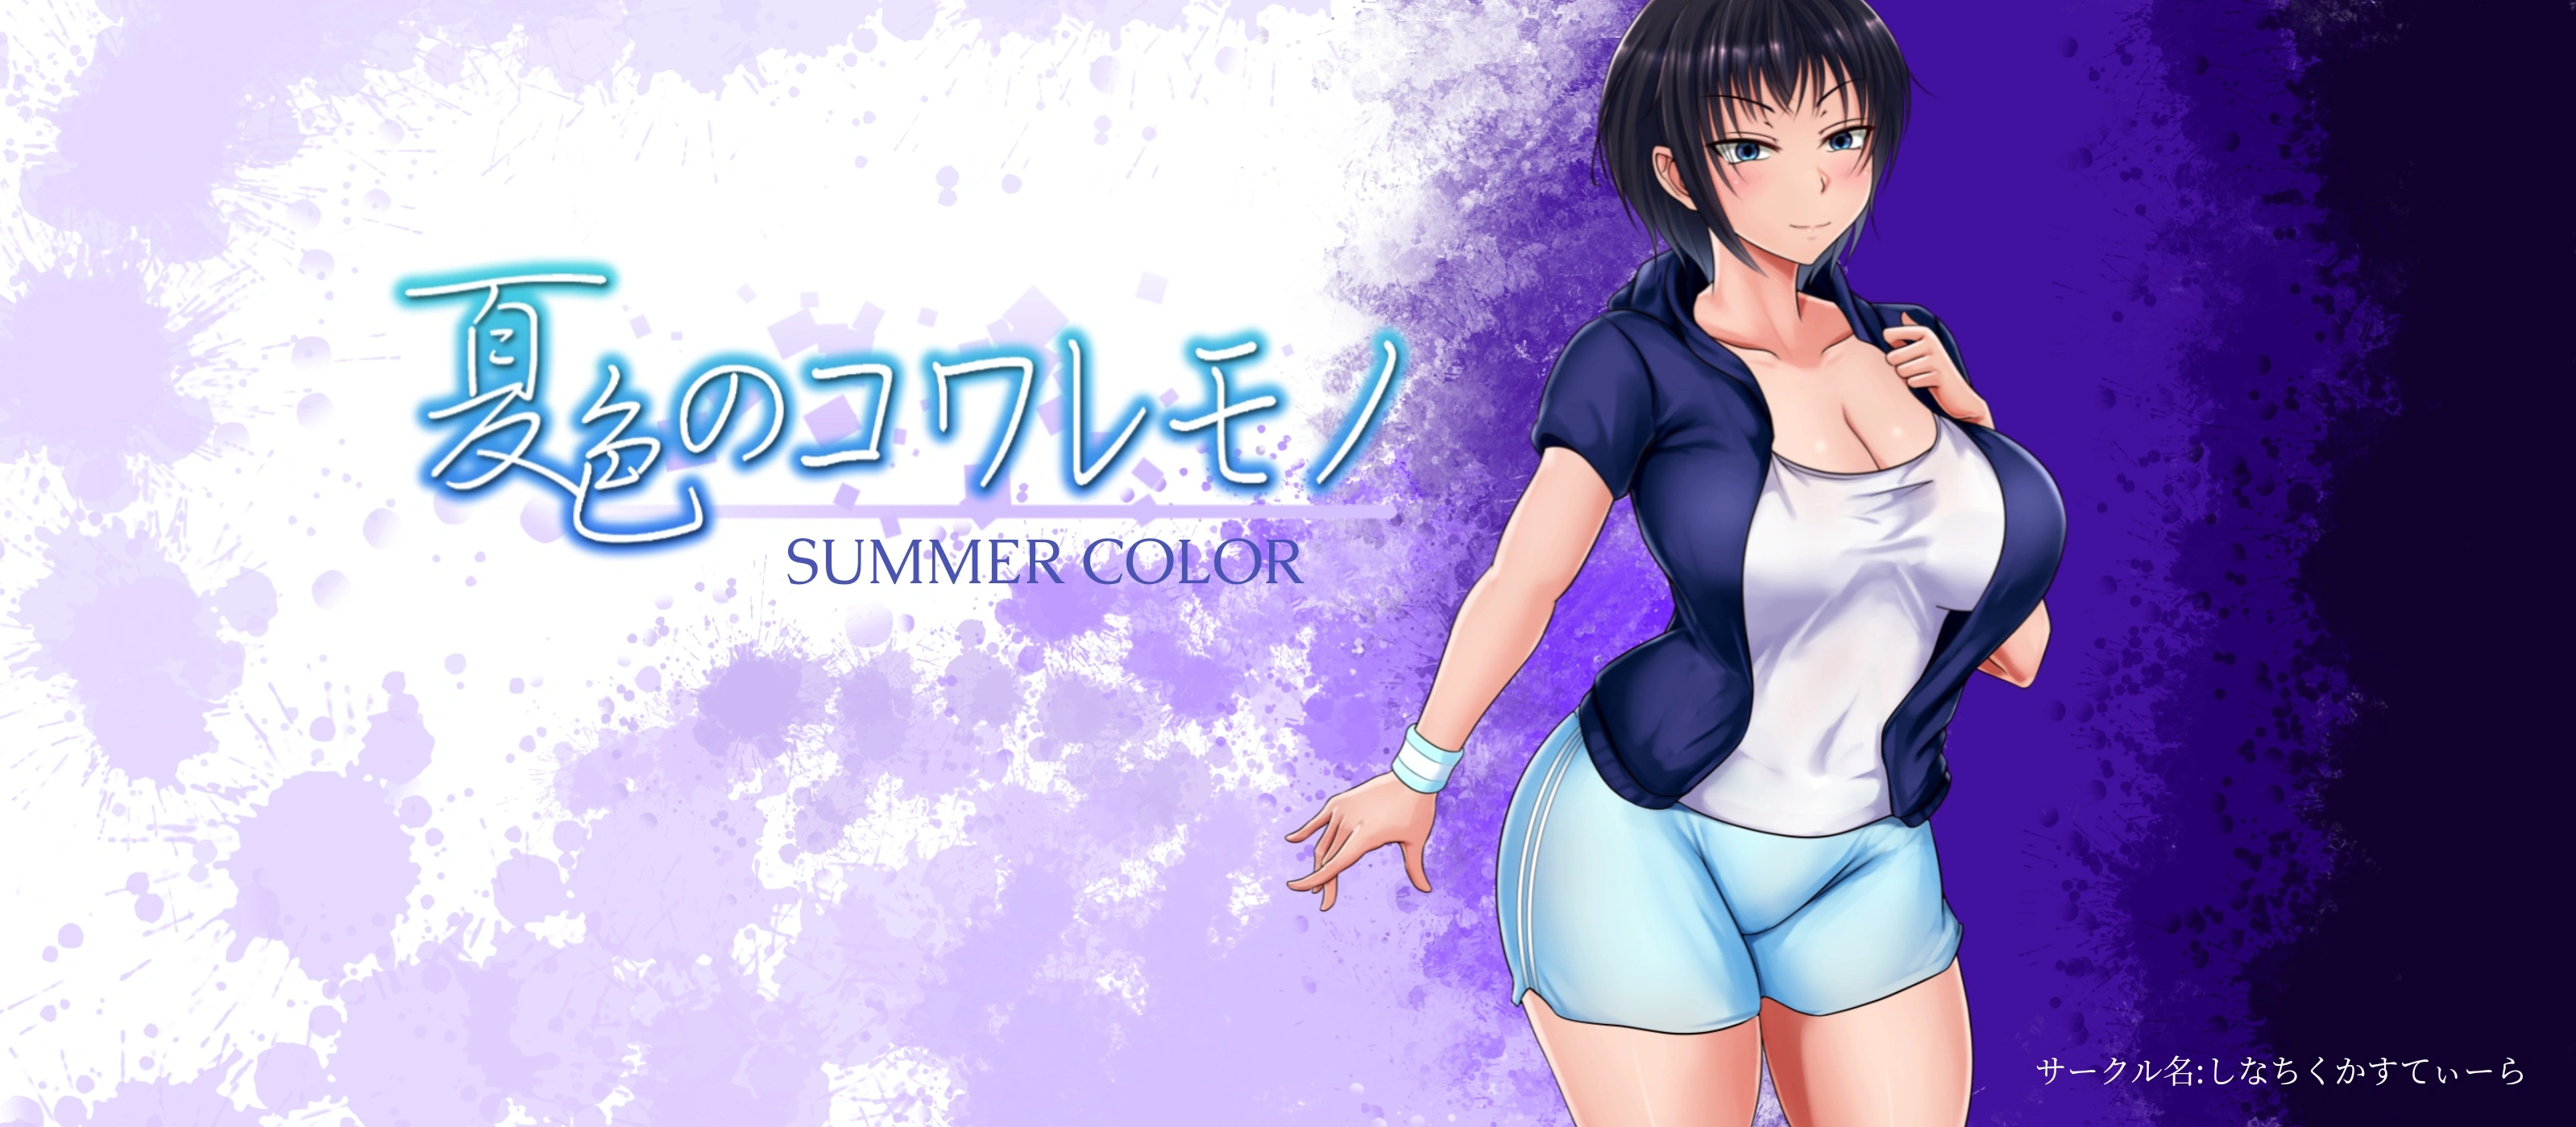 Summer Color [v1.04] main image